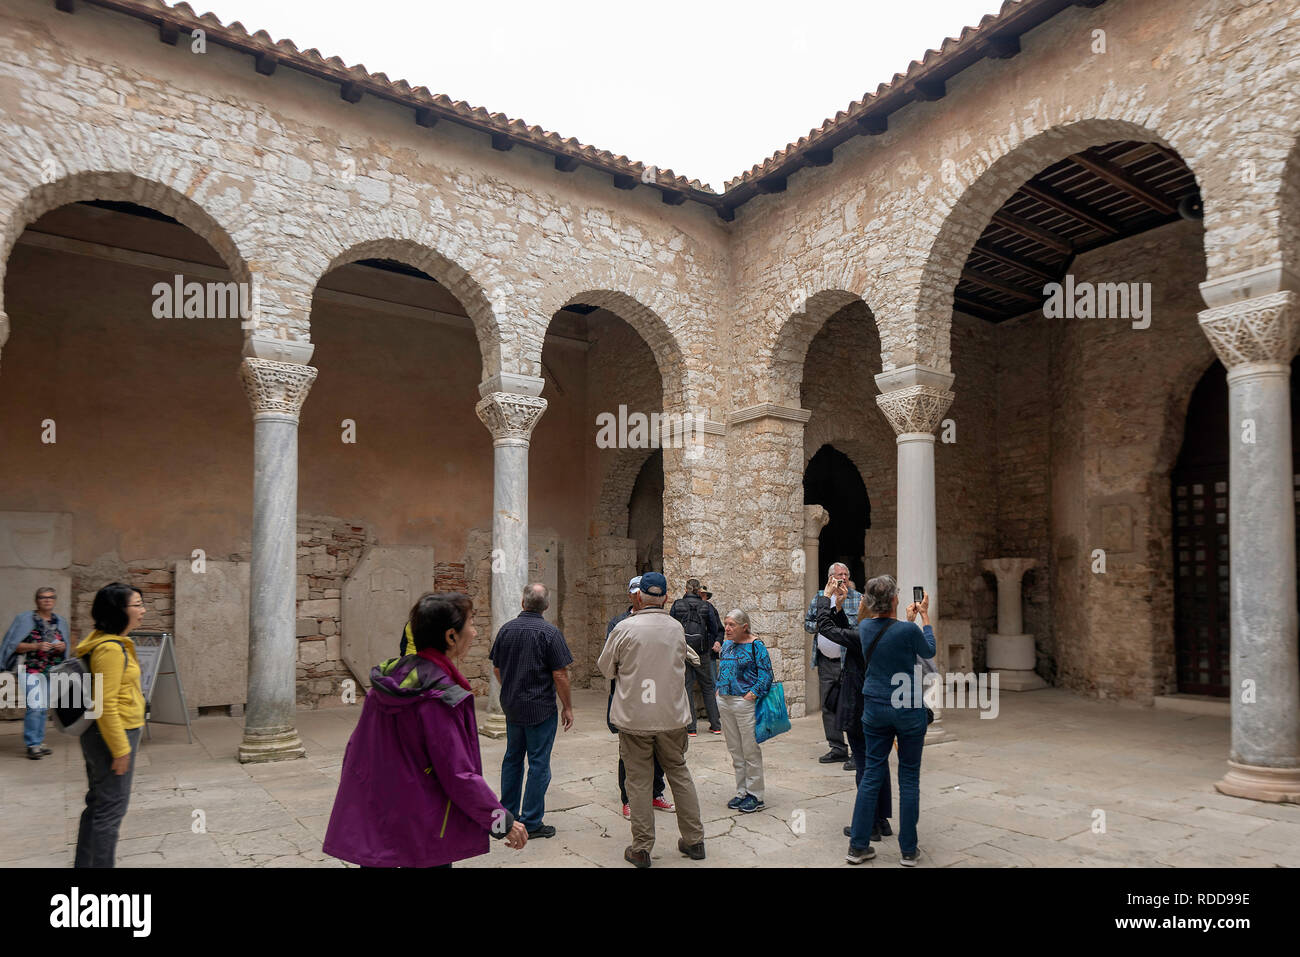 The courtyard at the Episcopal Complex of the Euphrasian Basilica, Porec, Croatia Stock Photo